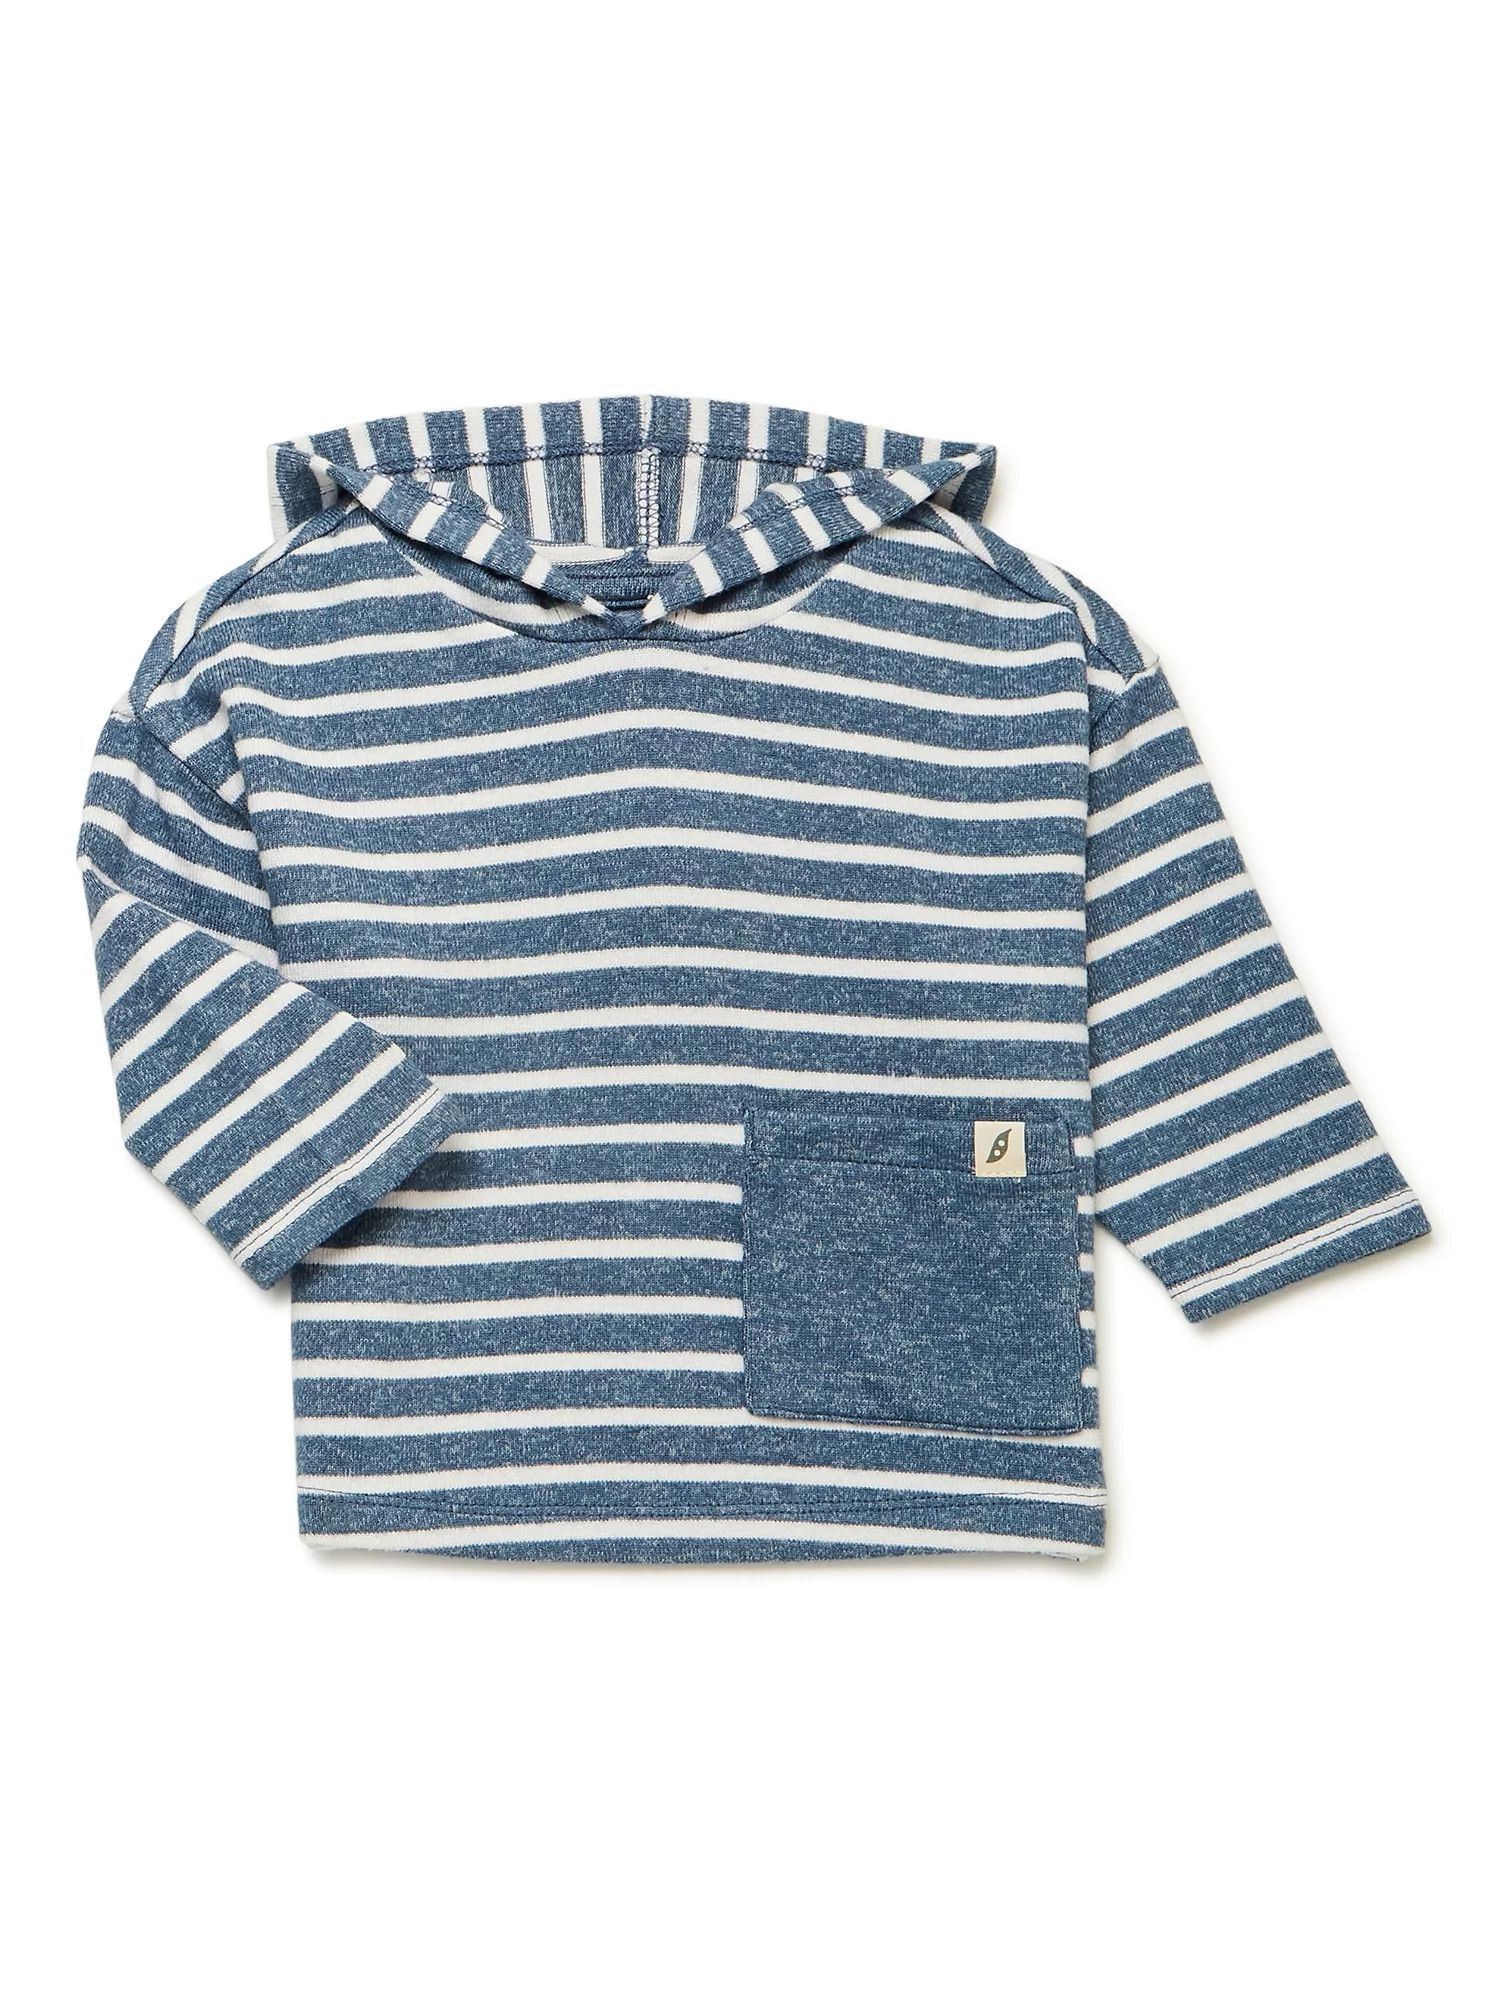 easy-peasy Baby Long Sleeve Stripe Hacci Hoodie, Sizes 0/3-24 Months | Walmart (US)